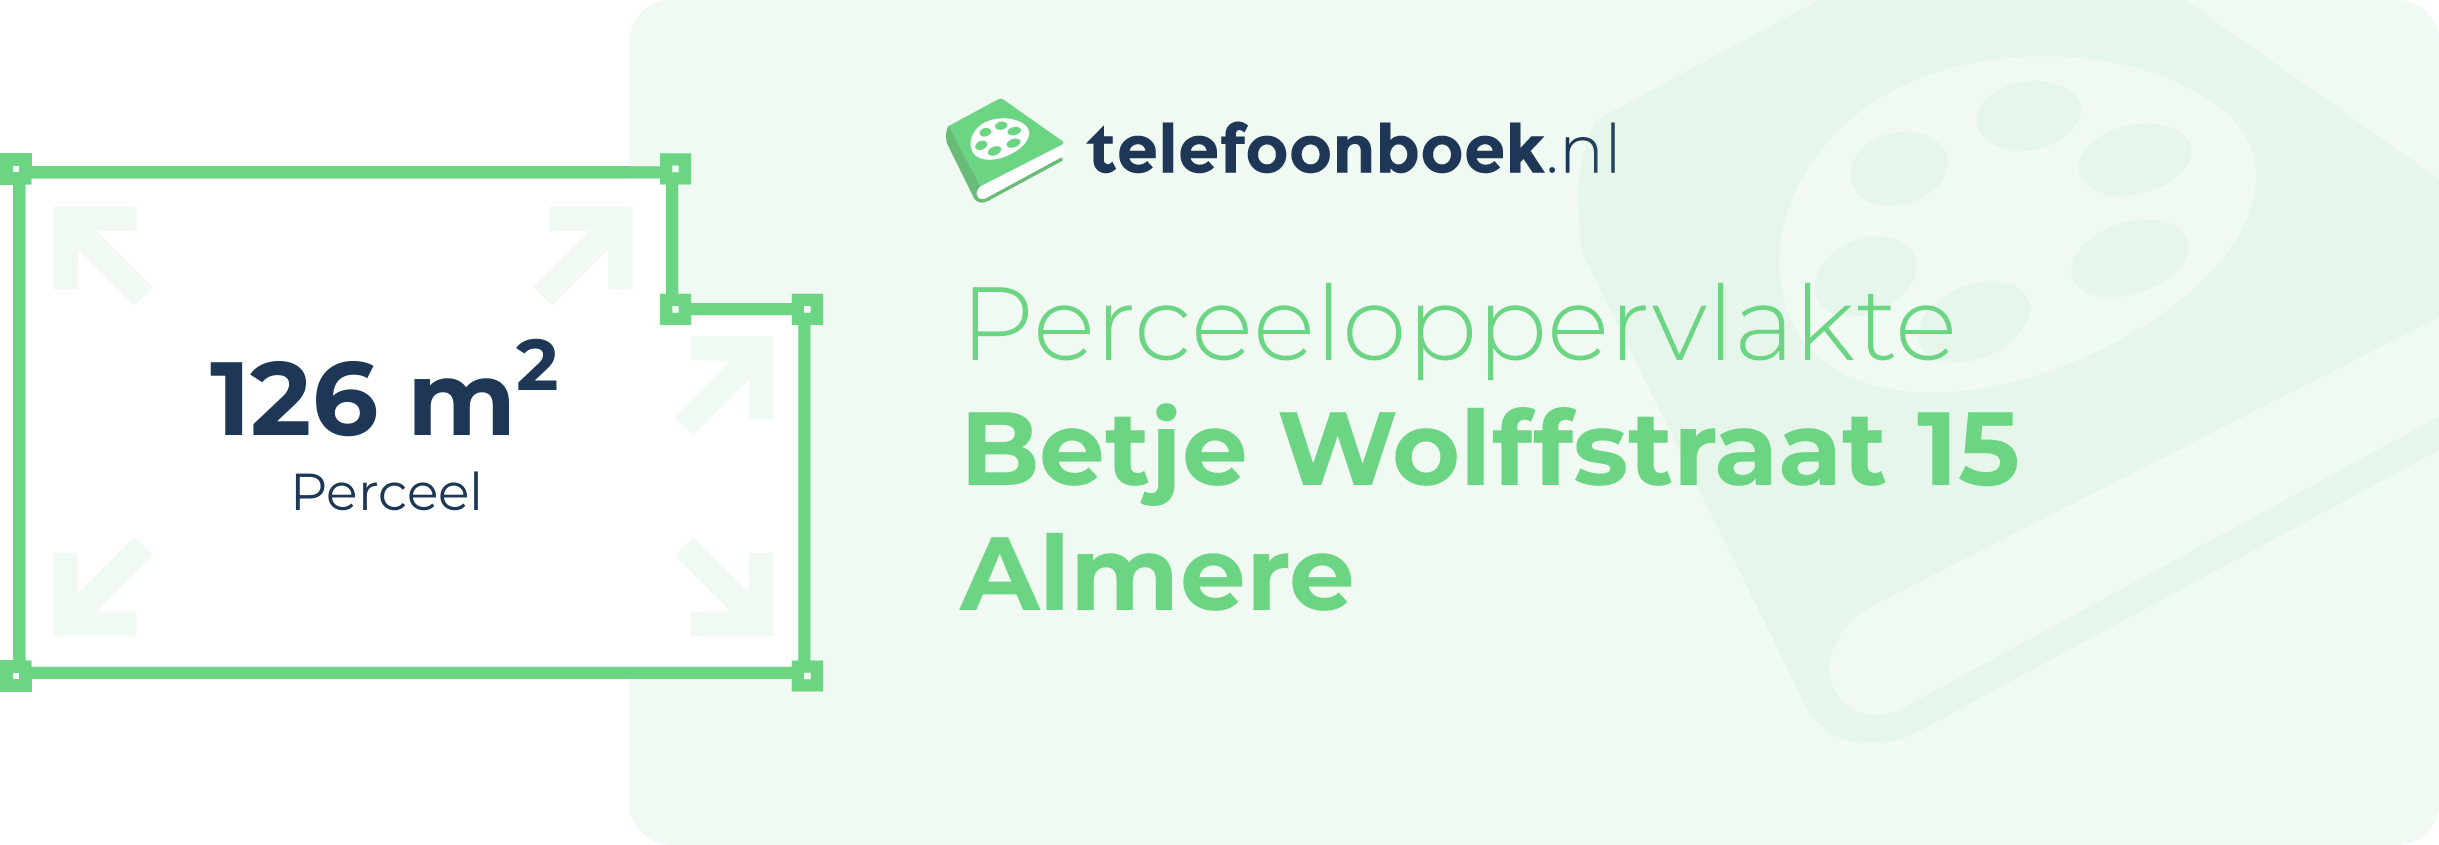 Perceeloppervlakte Betje Wolffstraat 15 Almere